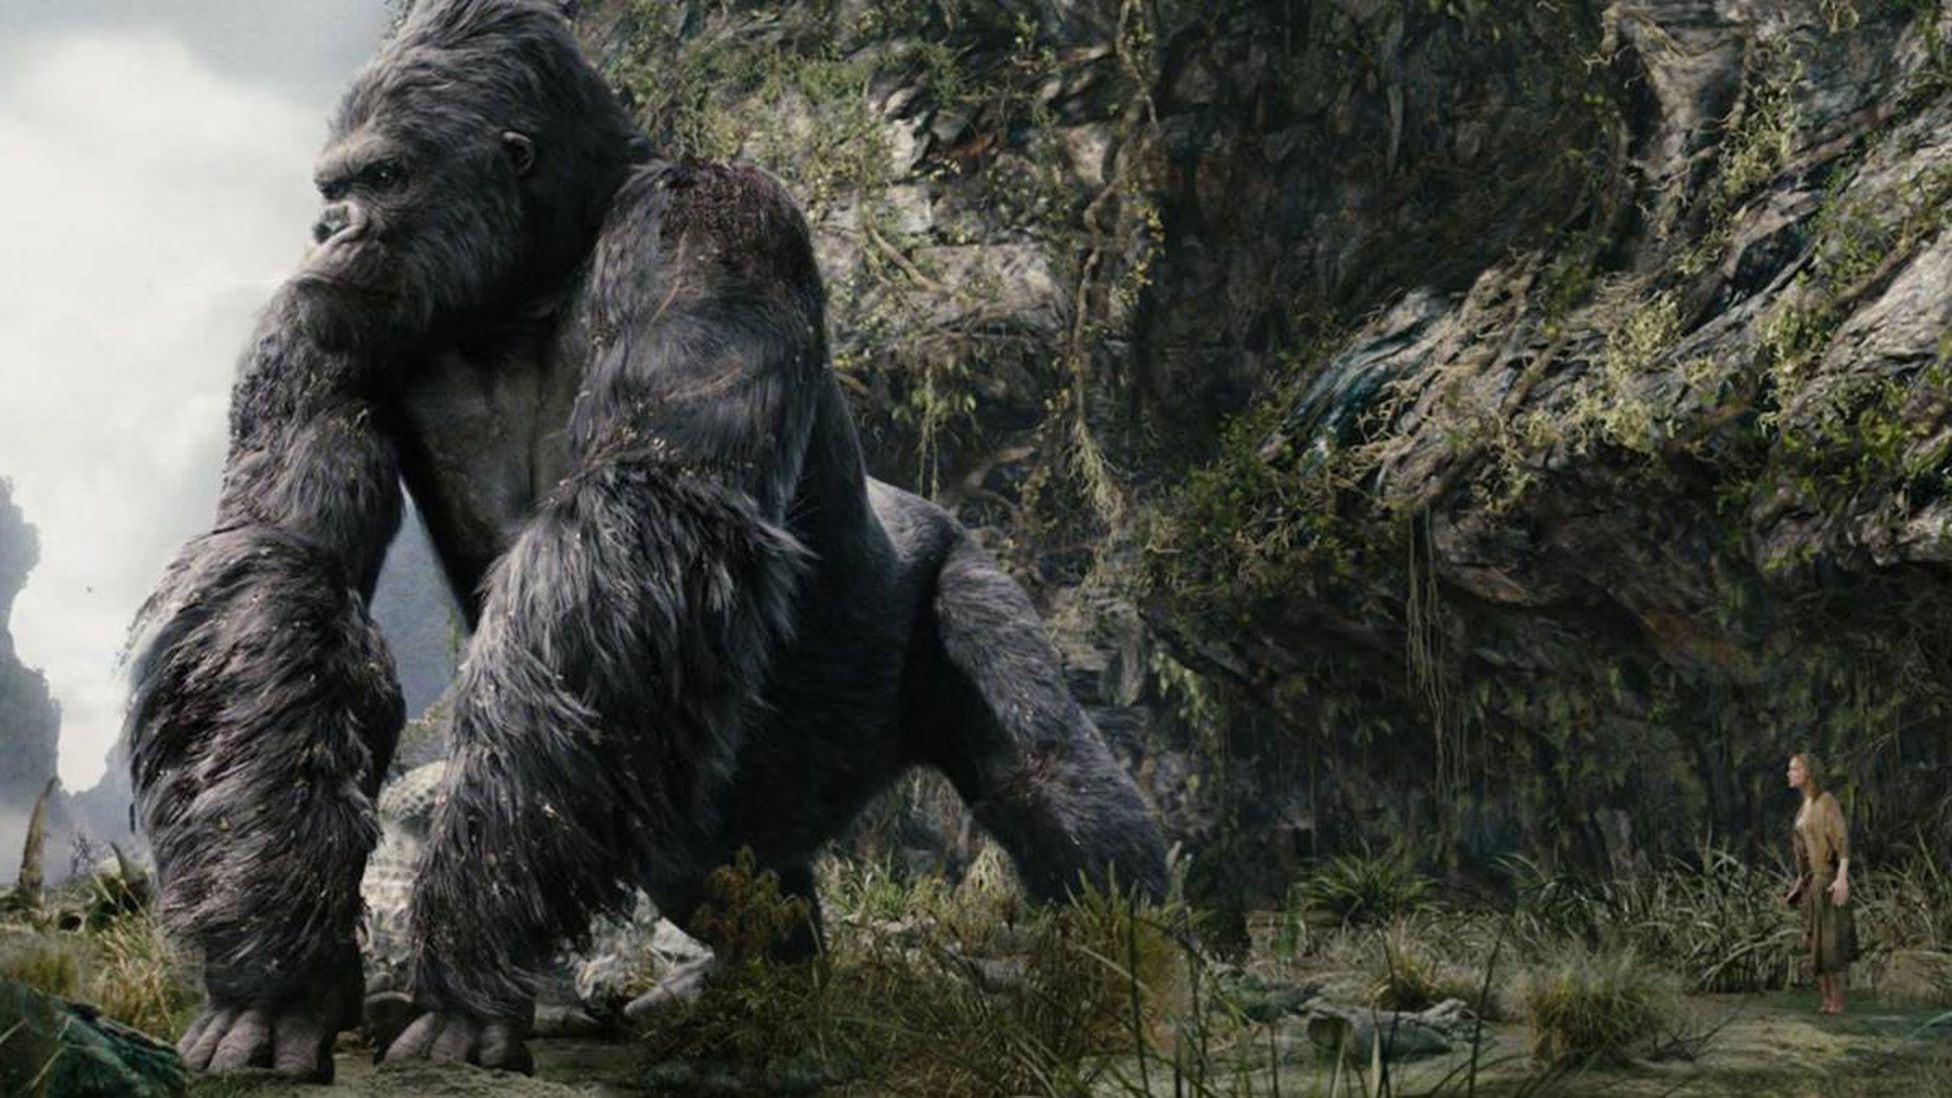 King Kong: Así nació el mito del gorila más famoso del cine - Tikitakas